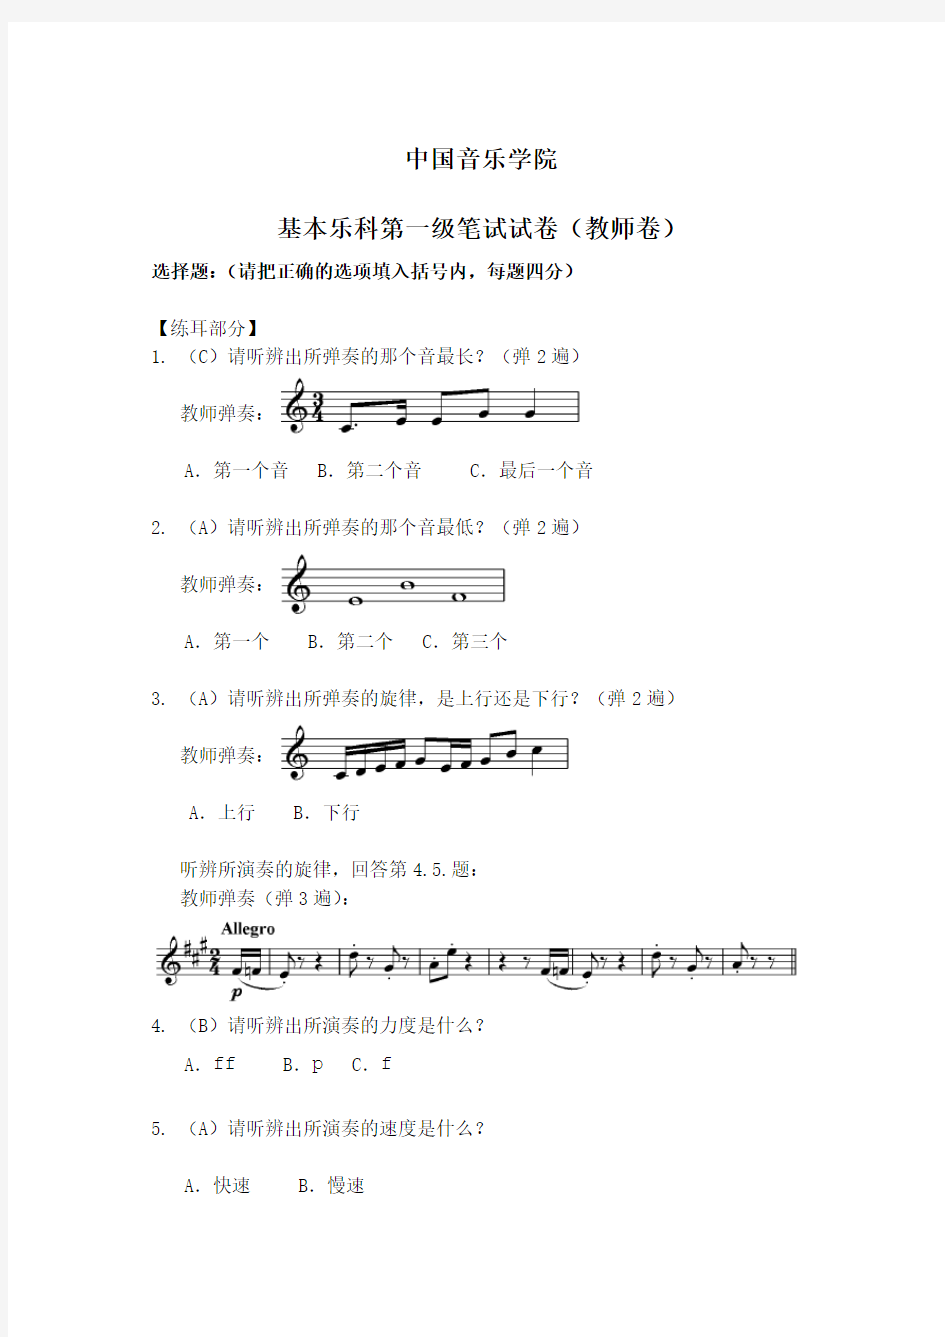 (完整版)中国音乐学院基本乐科第一级笔试试卷(教师卷)